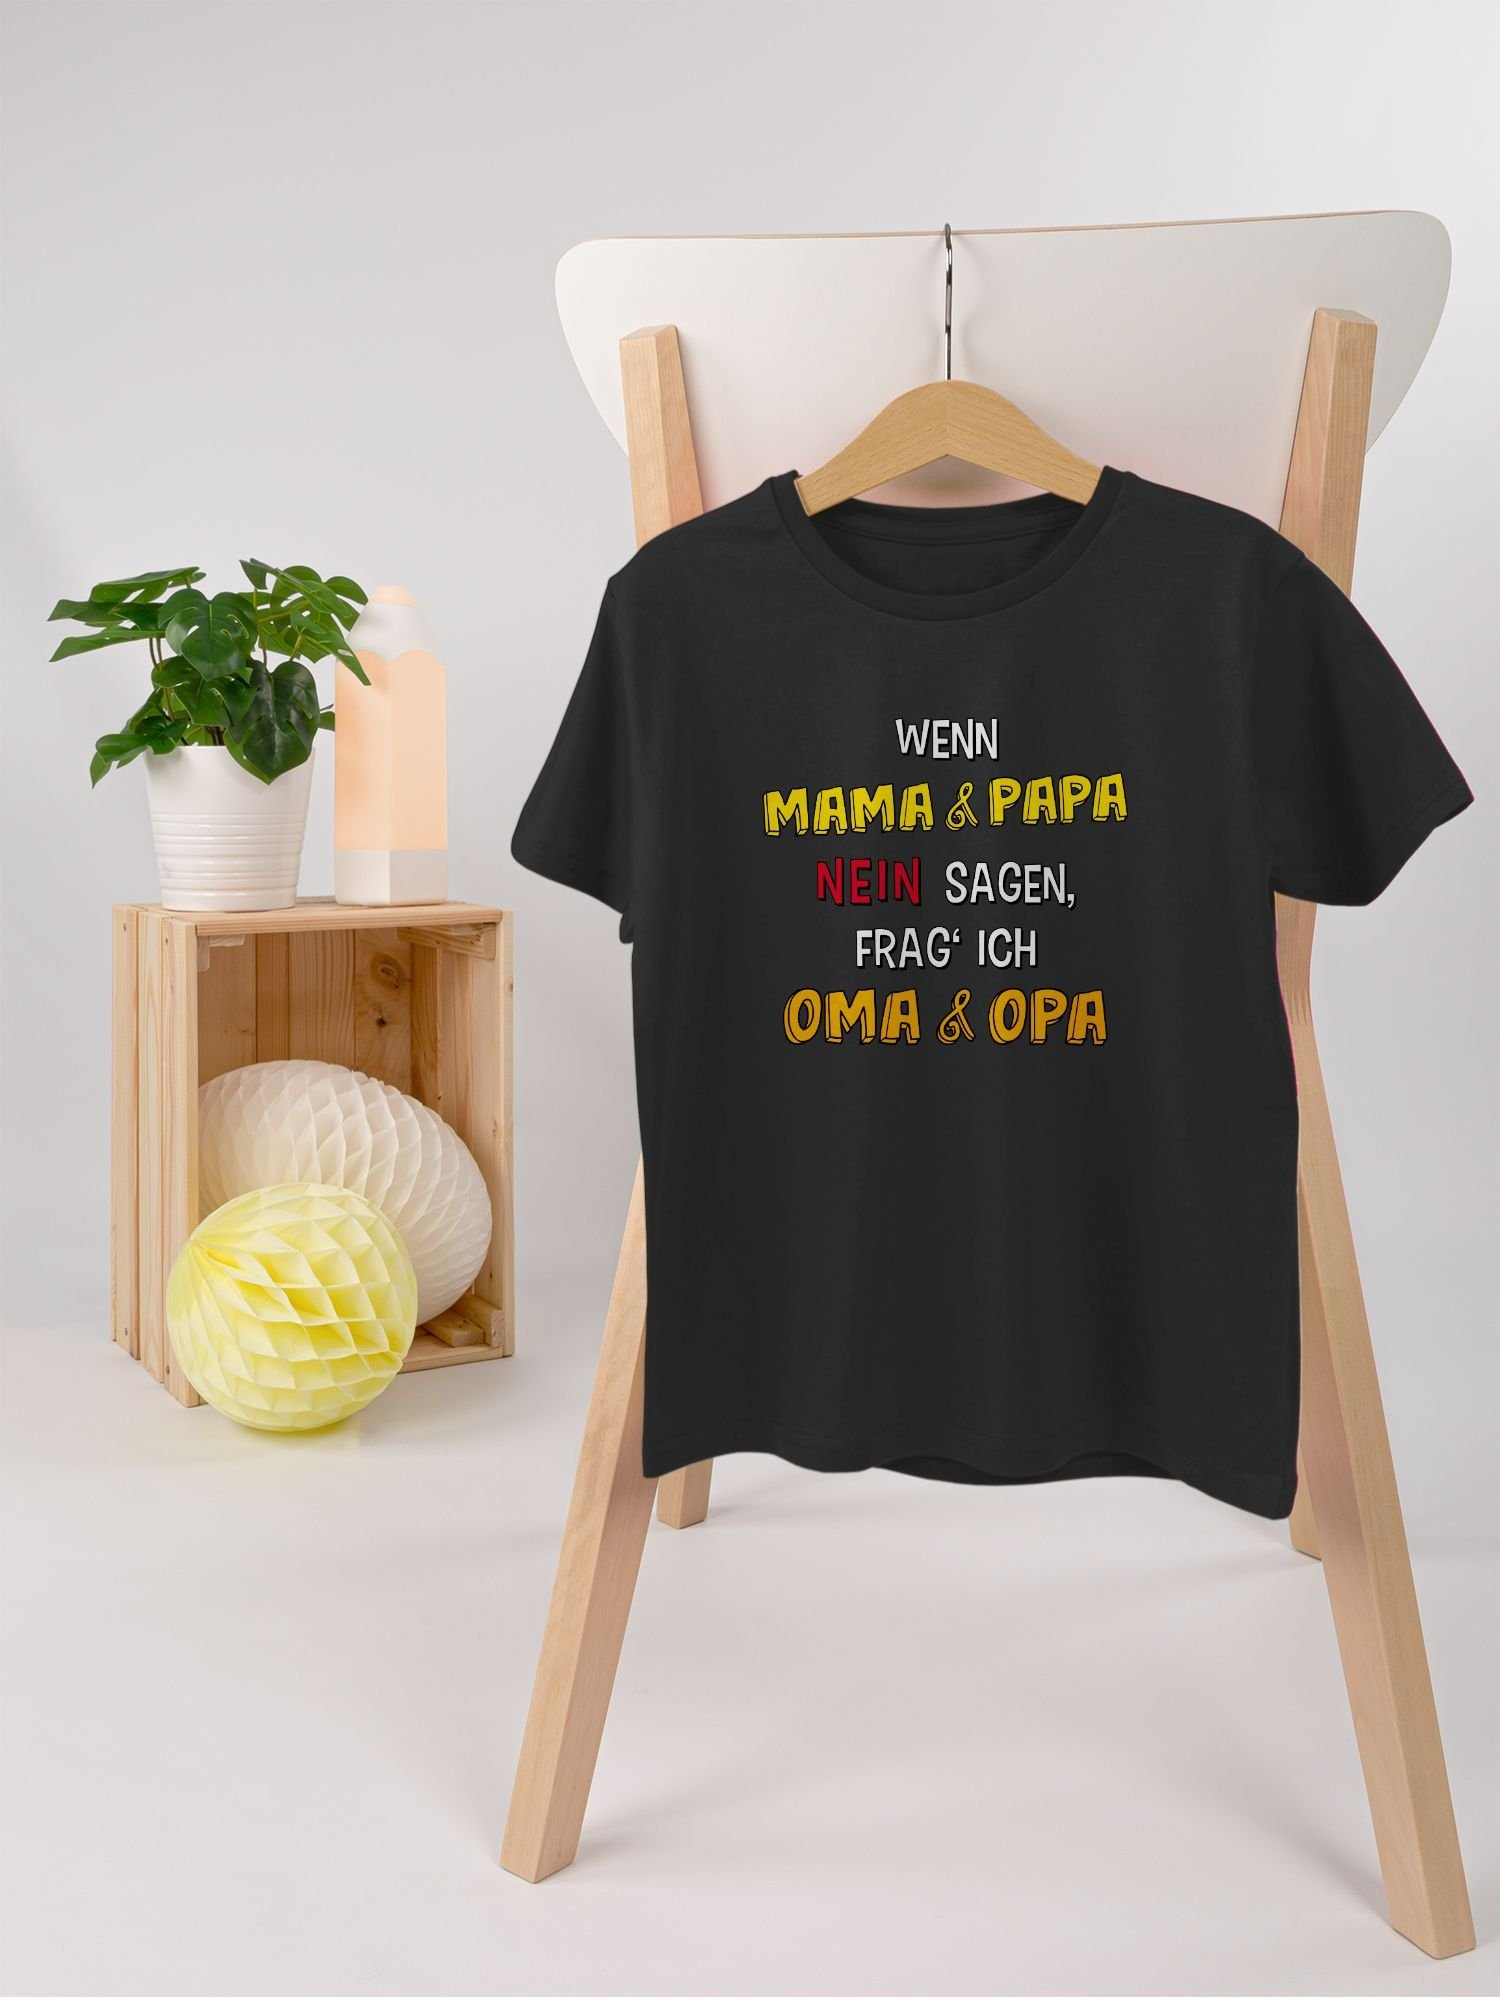 Kinder und Schwarz ich Statement Sprüche Shirtracer frag' Opa T-Shirt sagen, Wenn nein 2 Oma und Papa Mama